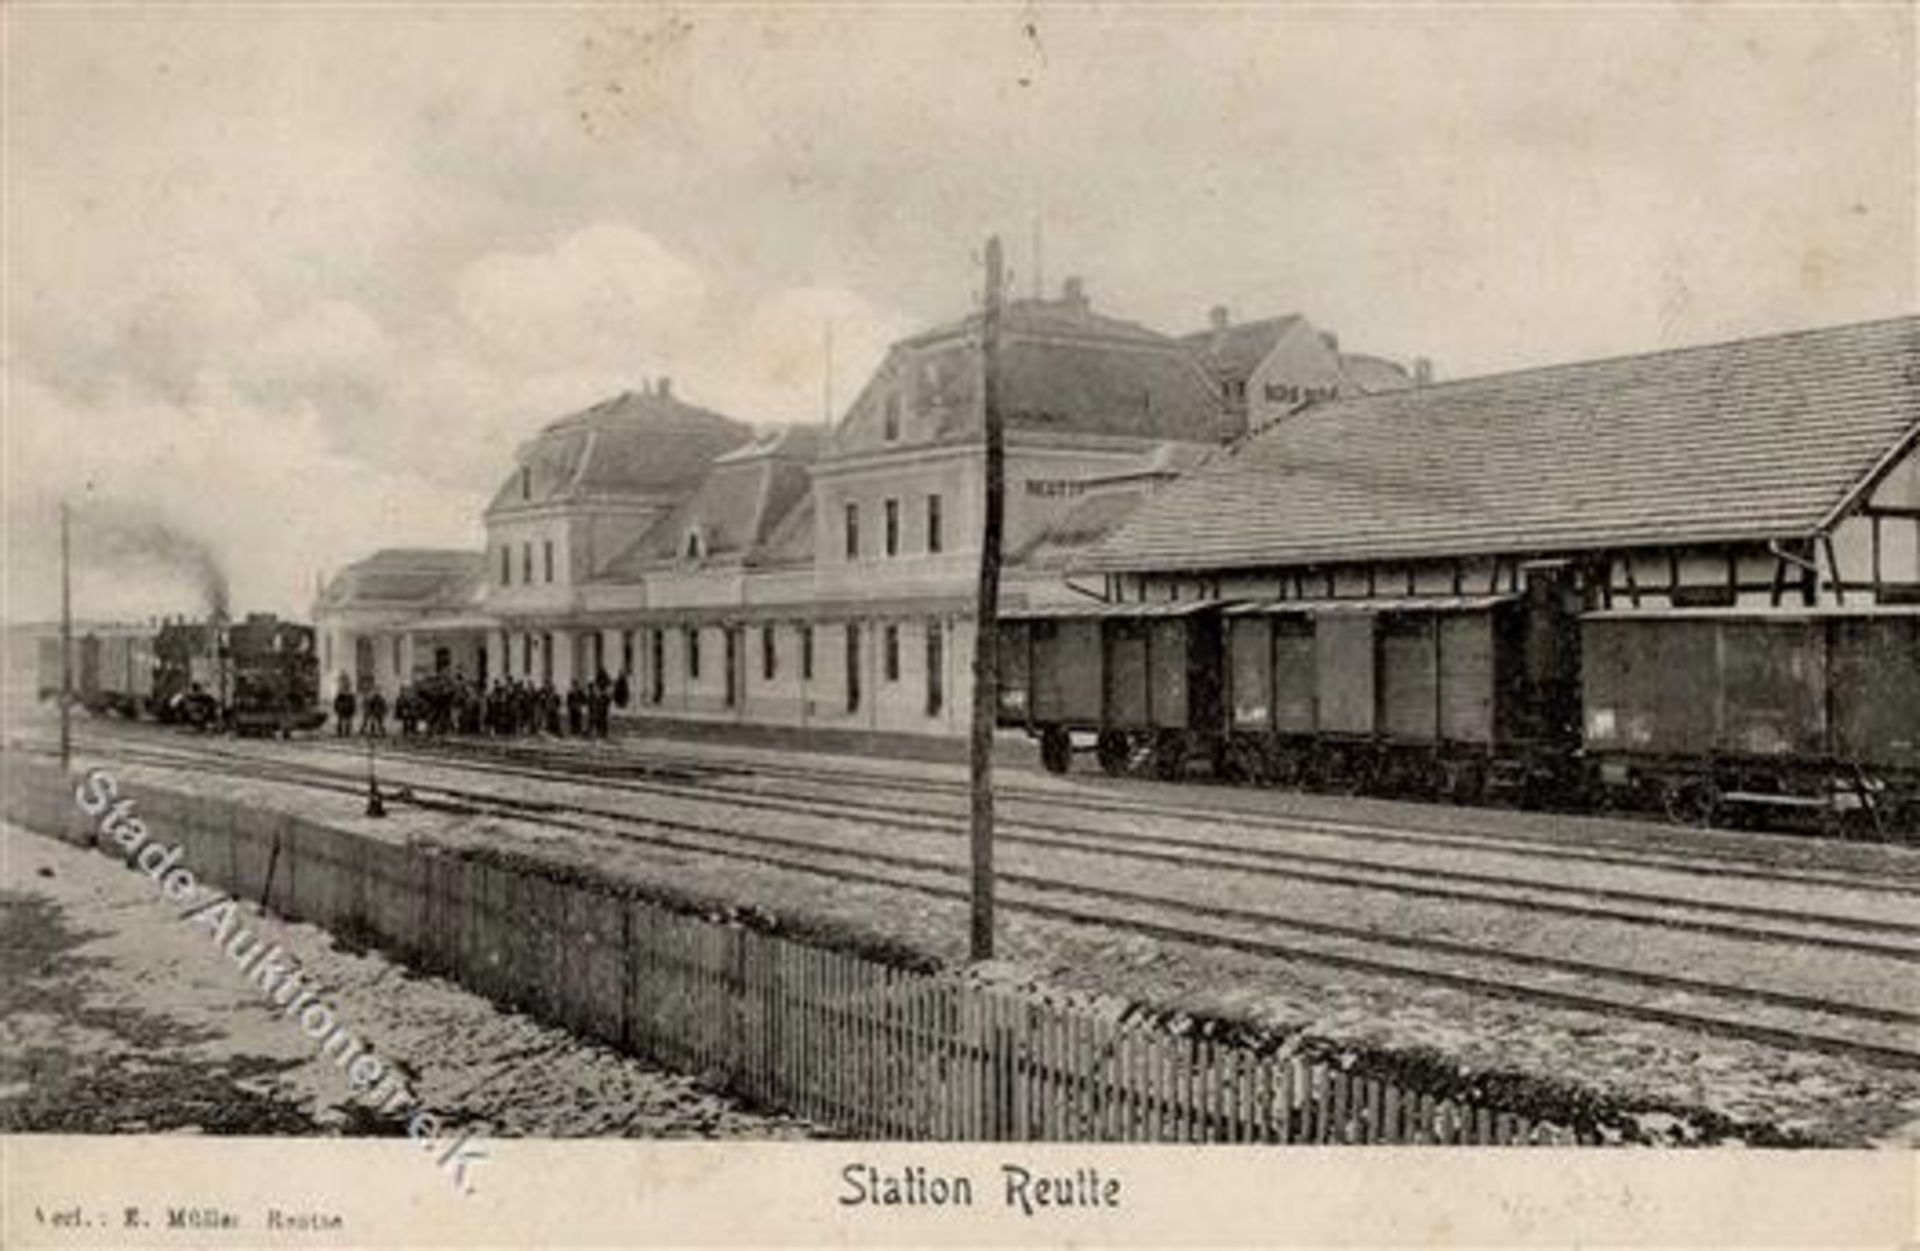 Reutte (6600) Österreich Bahnhof Eisenbahn 1906 II (Stauchung, Marke entfernt)Dieses Los wird in